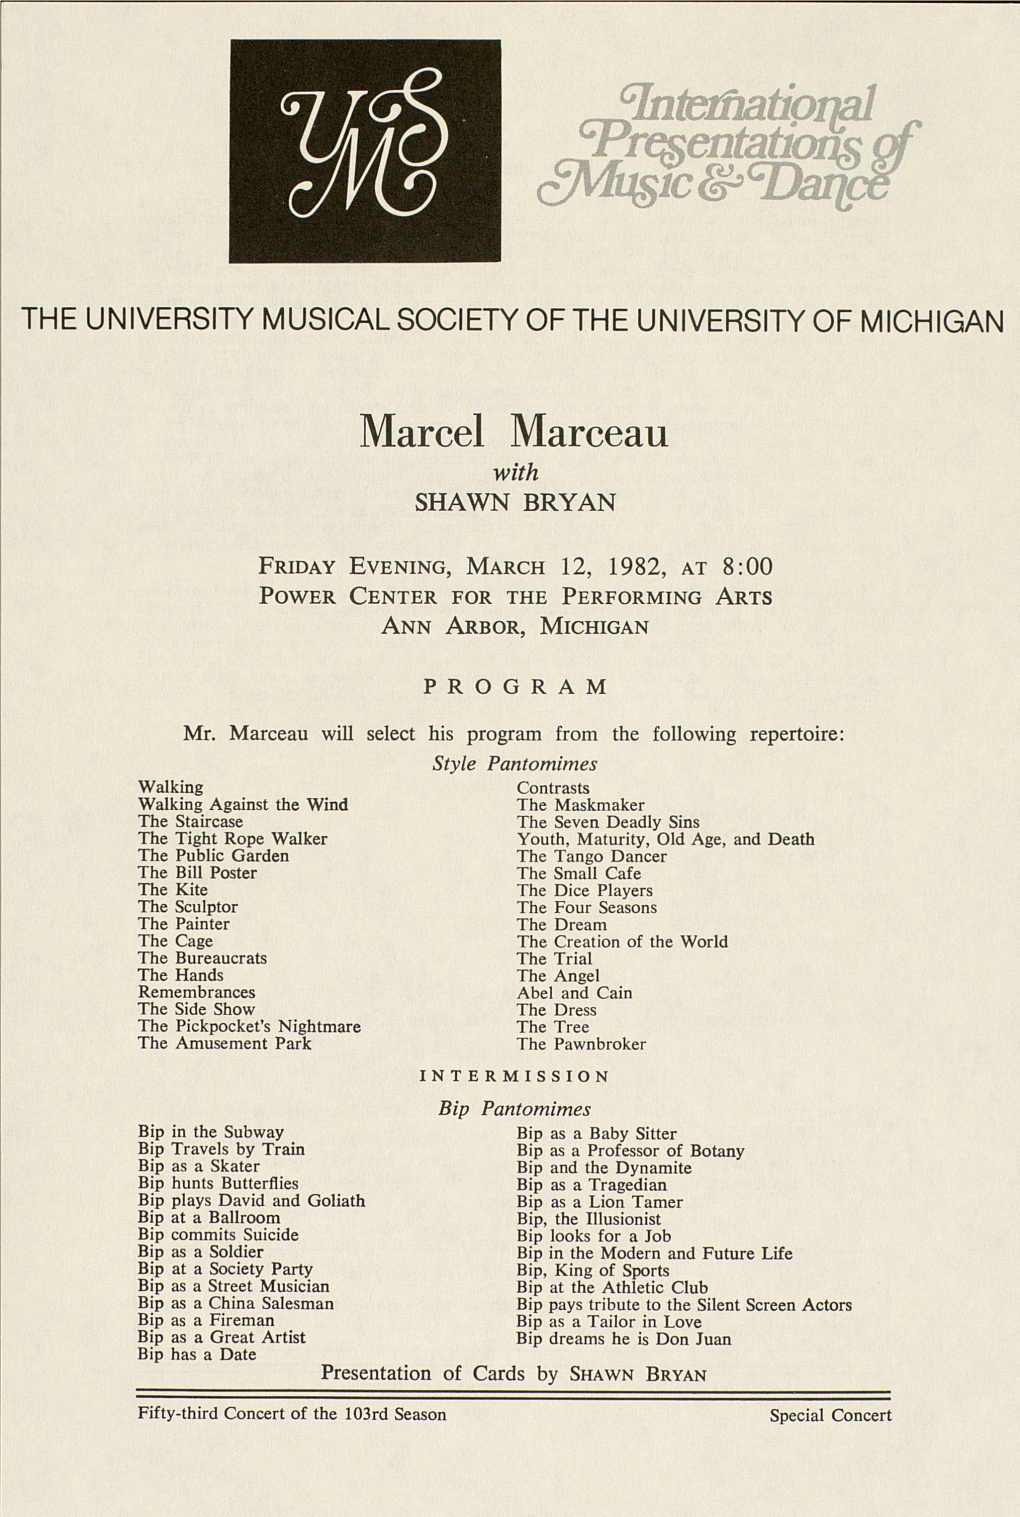 Marcel Marceau -With SHAWN BRYAN